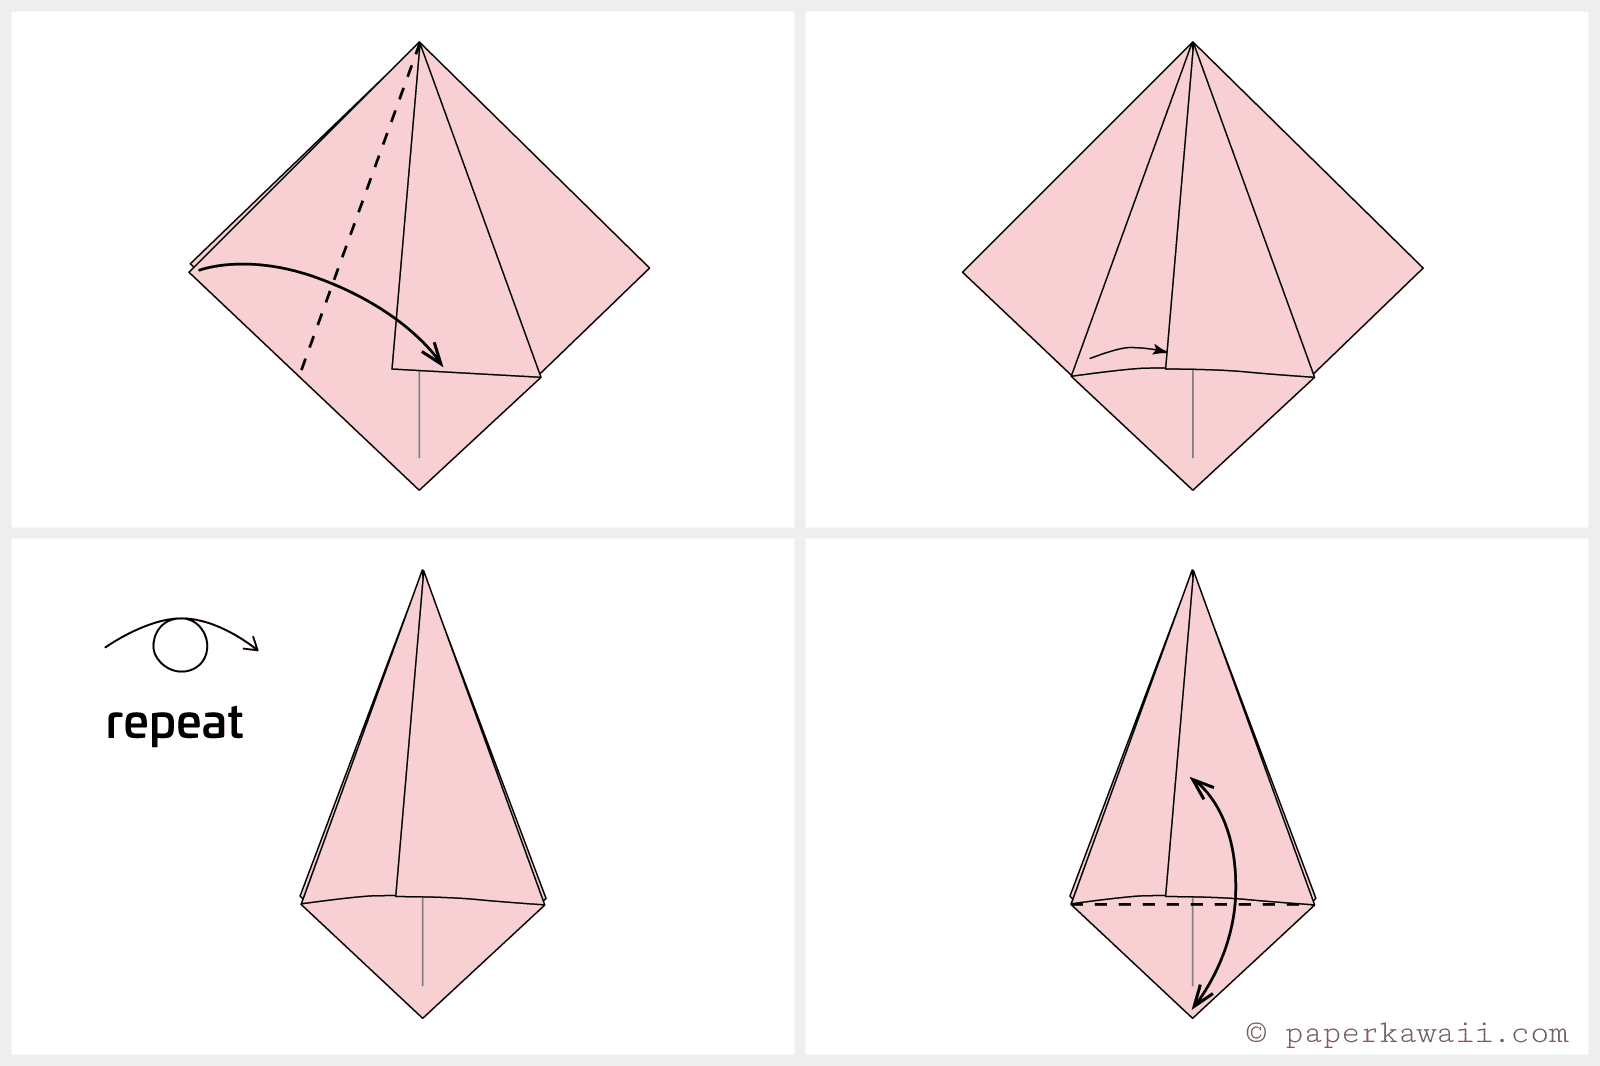 Как сделать тюльпан из бумаги поэтапно. Оригами тюльпан схема. Оригами тюльпан пошагово для начинающих. Оригами из бумаги цветы тюльпан схема. Схема оригами тюльпан из бумаги пошагово.